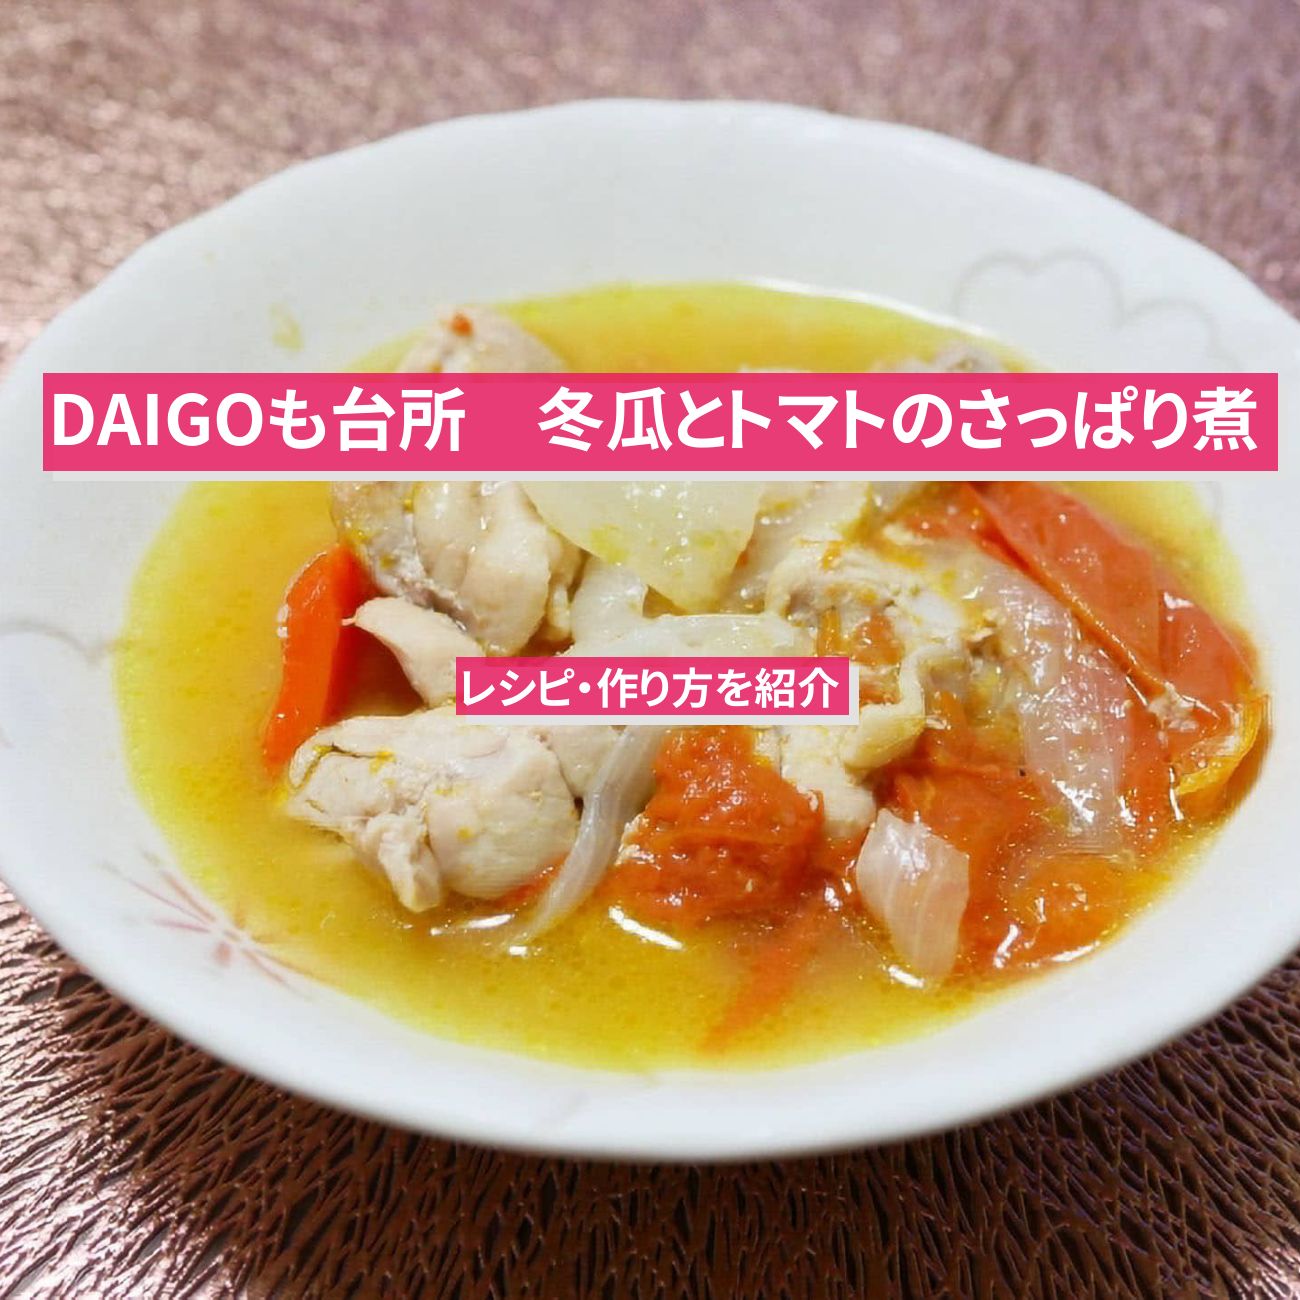 【DAIGOも台所】『冬瓜とトマトのさっぱり煮』のレシピ・作り方を紹介〔ダイゴも台所〕